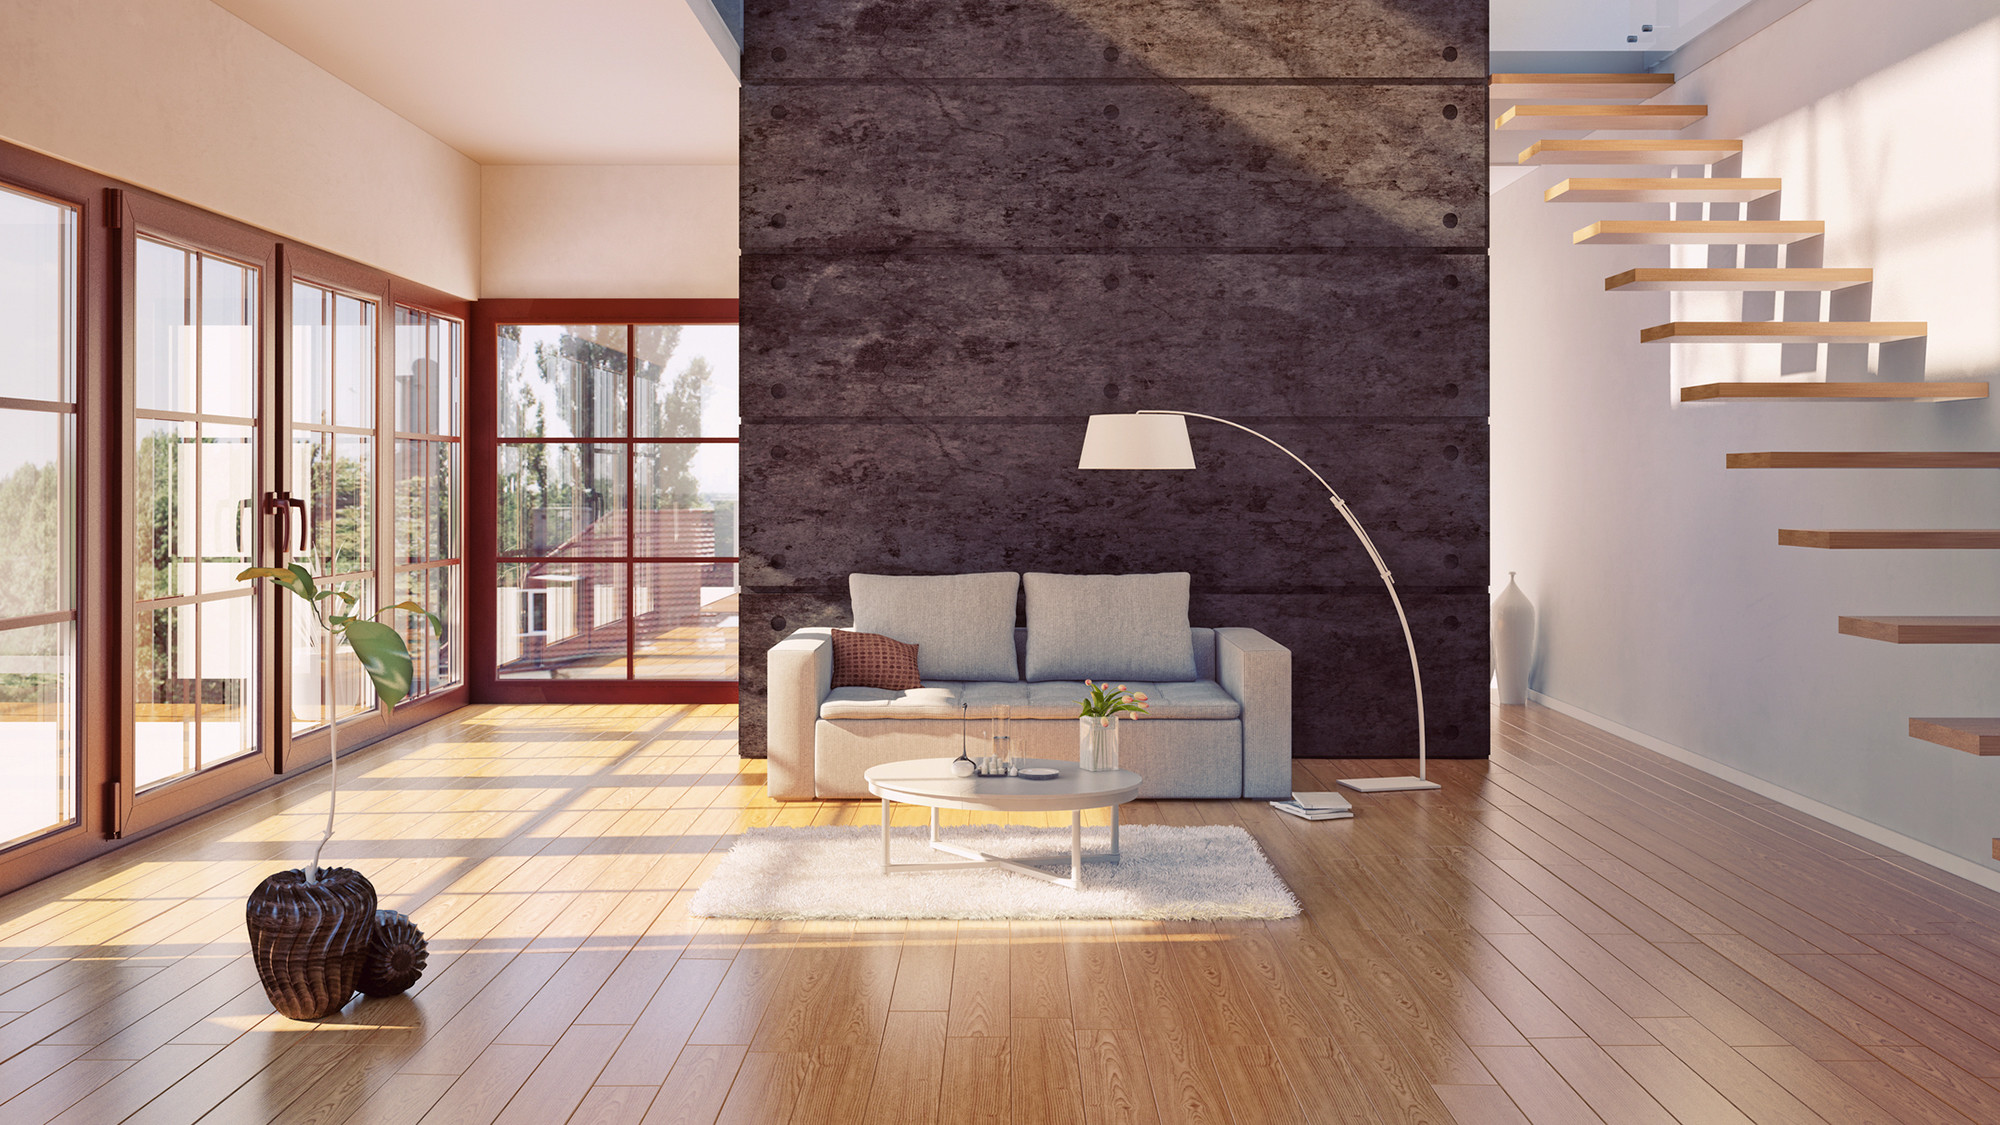 Hardwood Floor Refinishing south Jersey Of Do Hardwood Floors Provide the Best Return On Investment Realtor Coma Intended for Hardwood Floors Investment